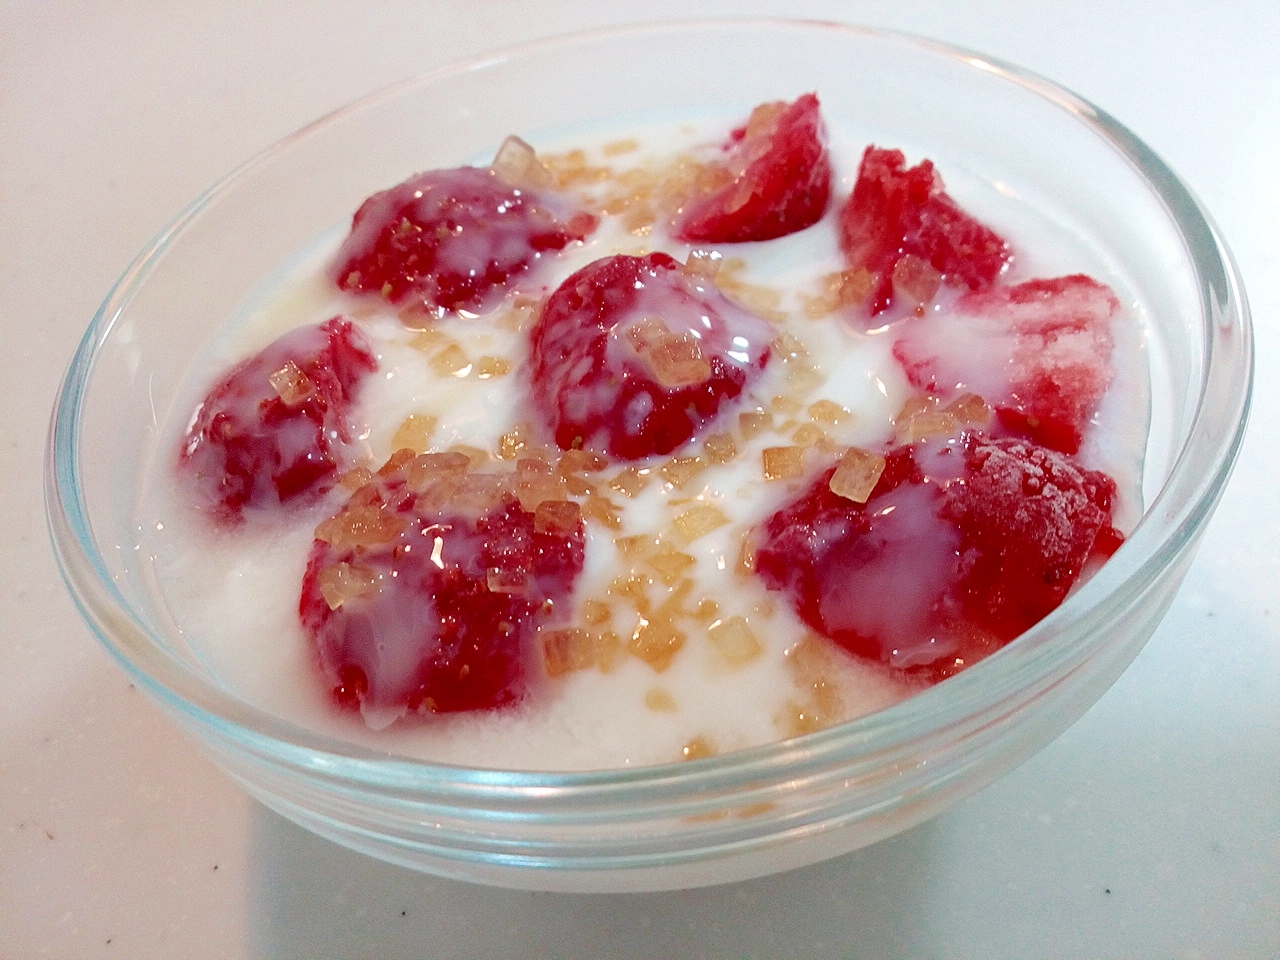 美的　冷凍苺とザラメ糖のヨーグルト